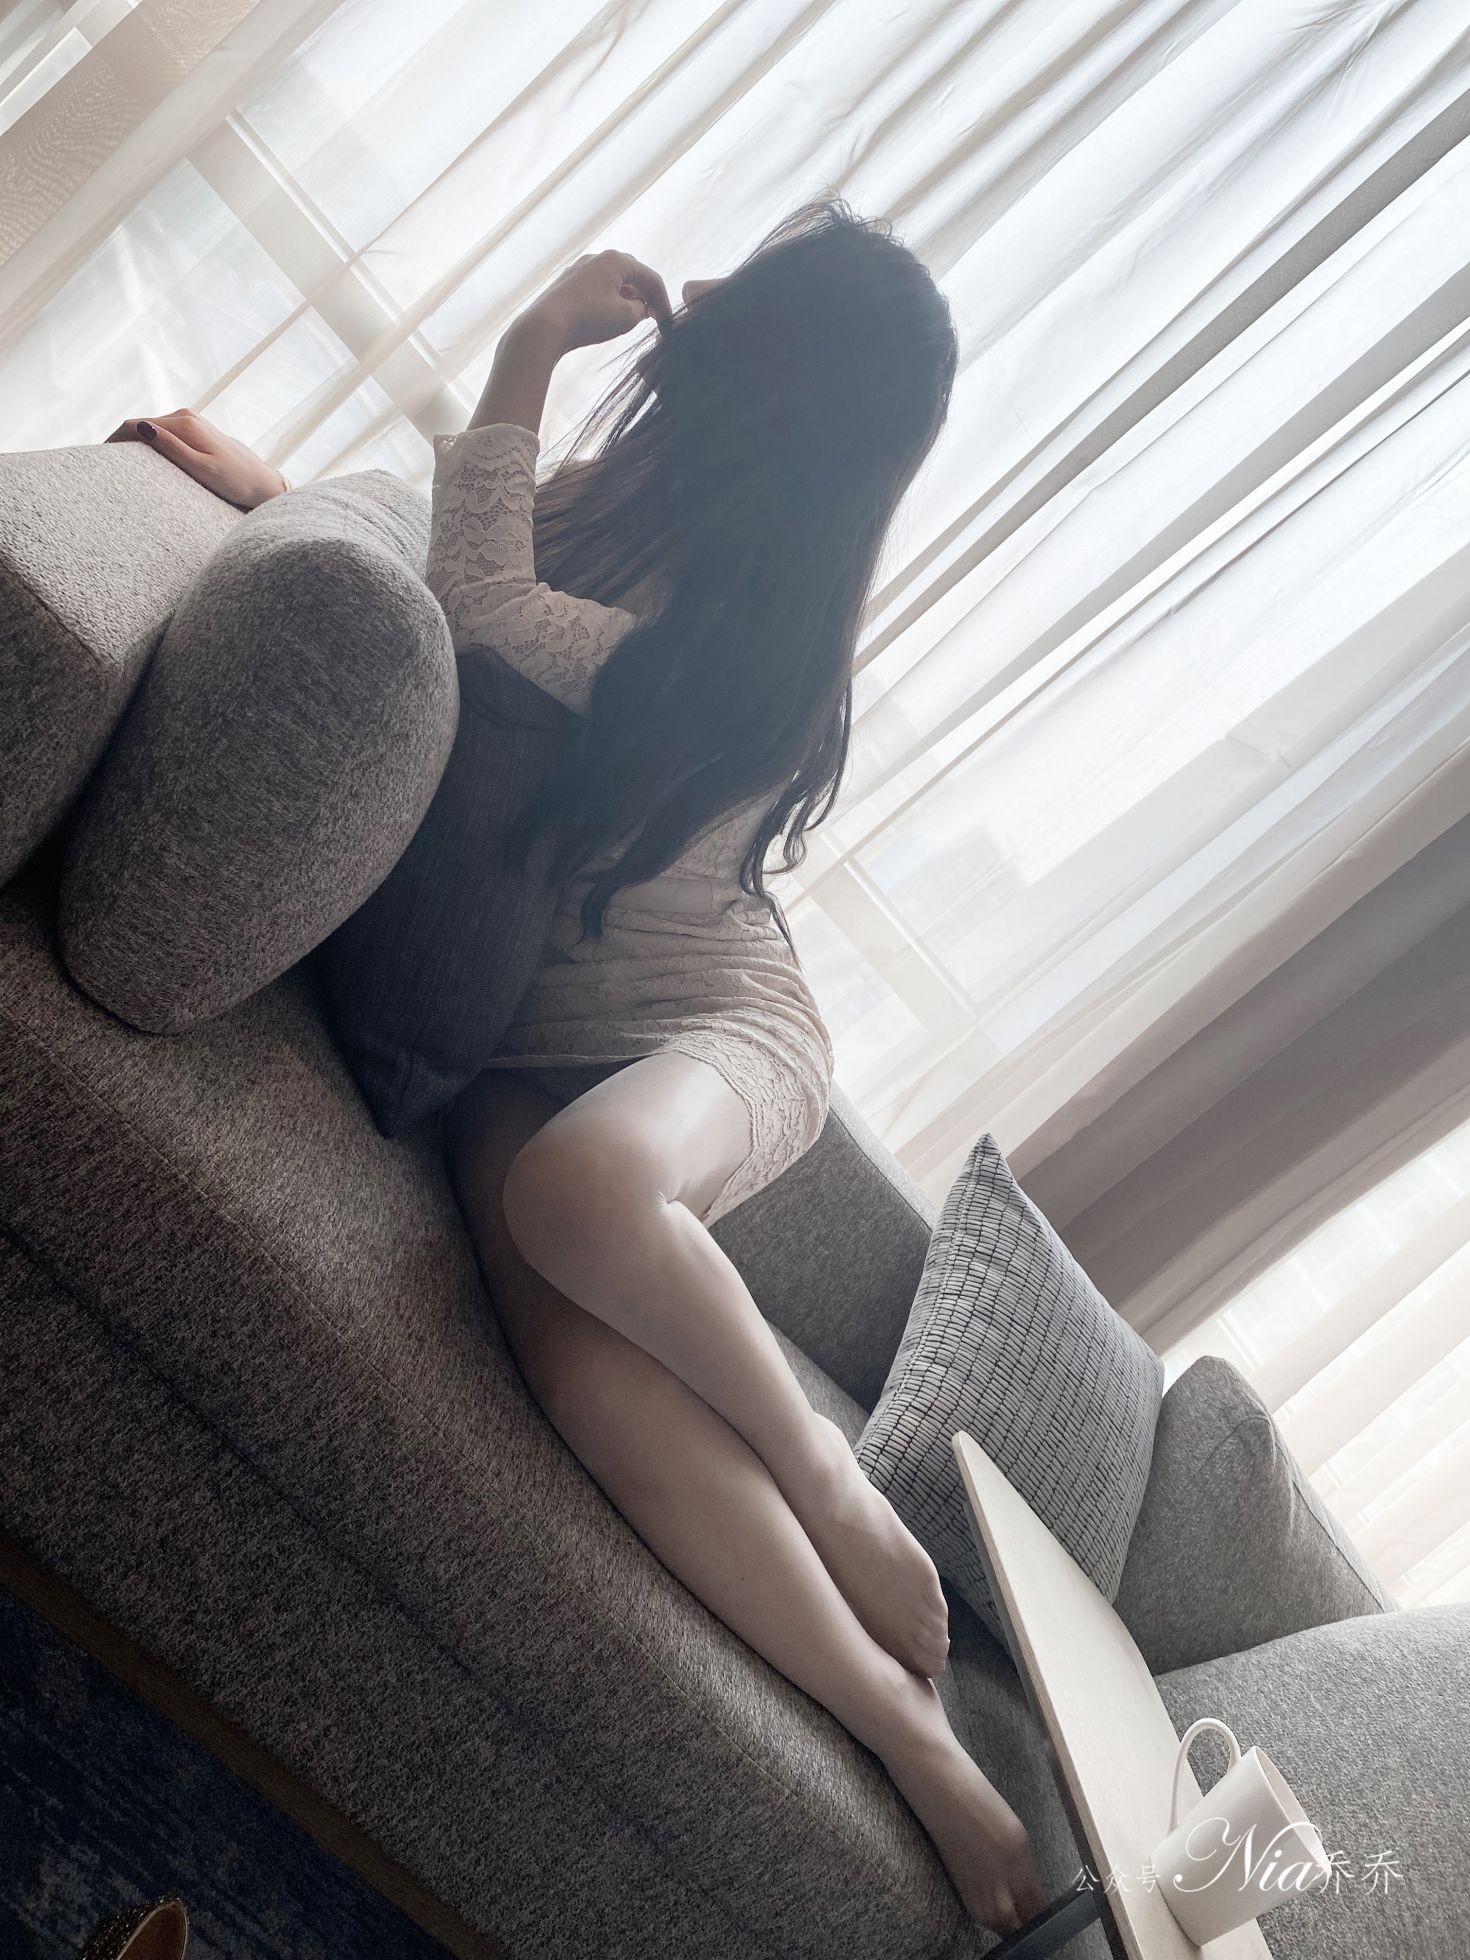 Nia乔乔美女网红性感自拍私摄写真图片家有娇妻蕾丝包臀裙美腿 (30)